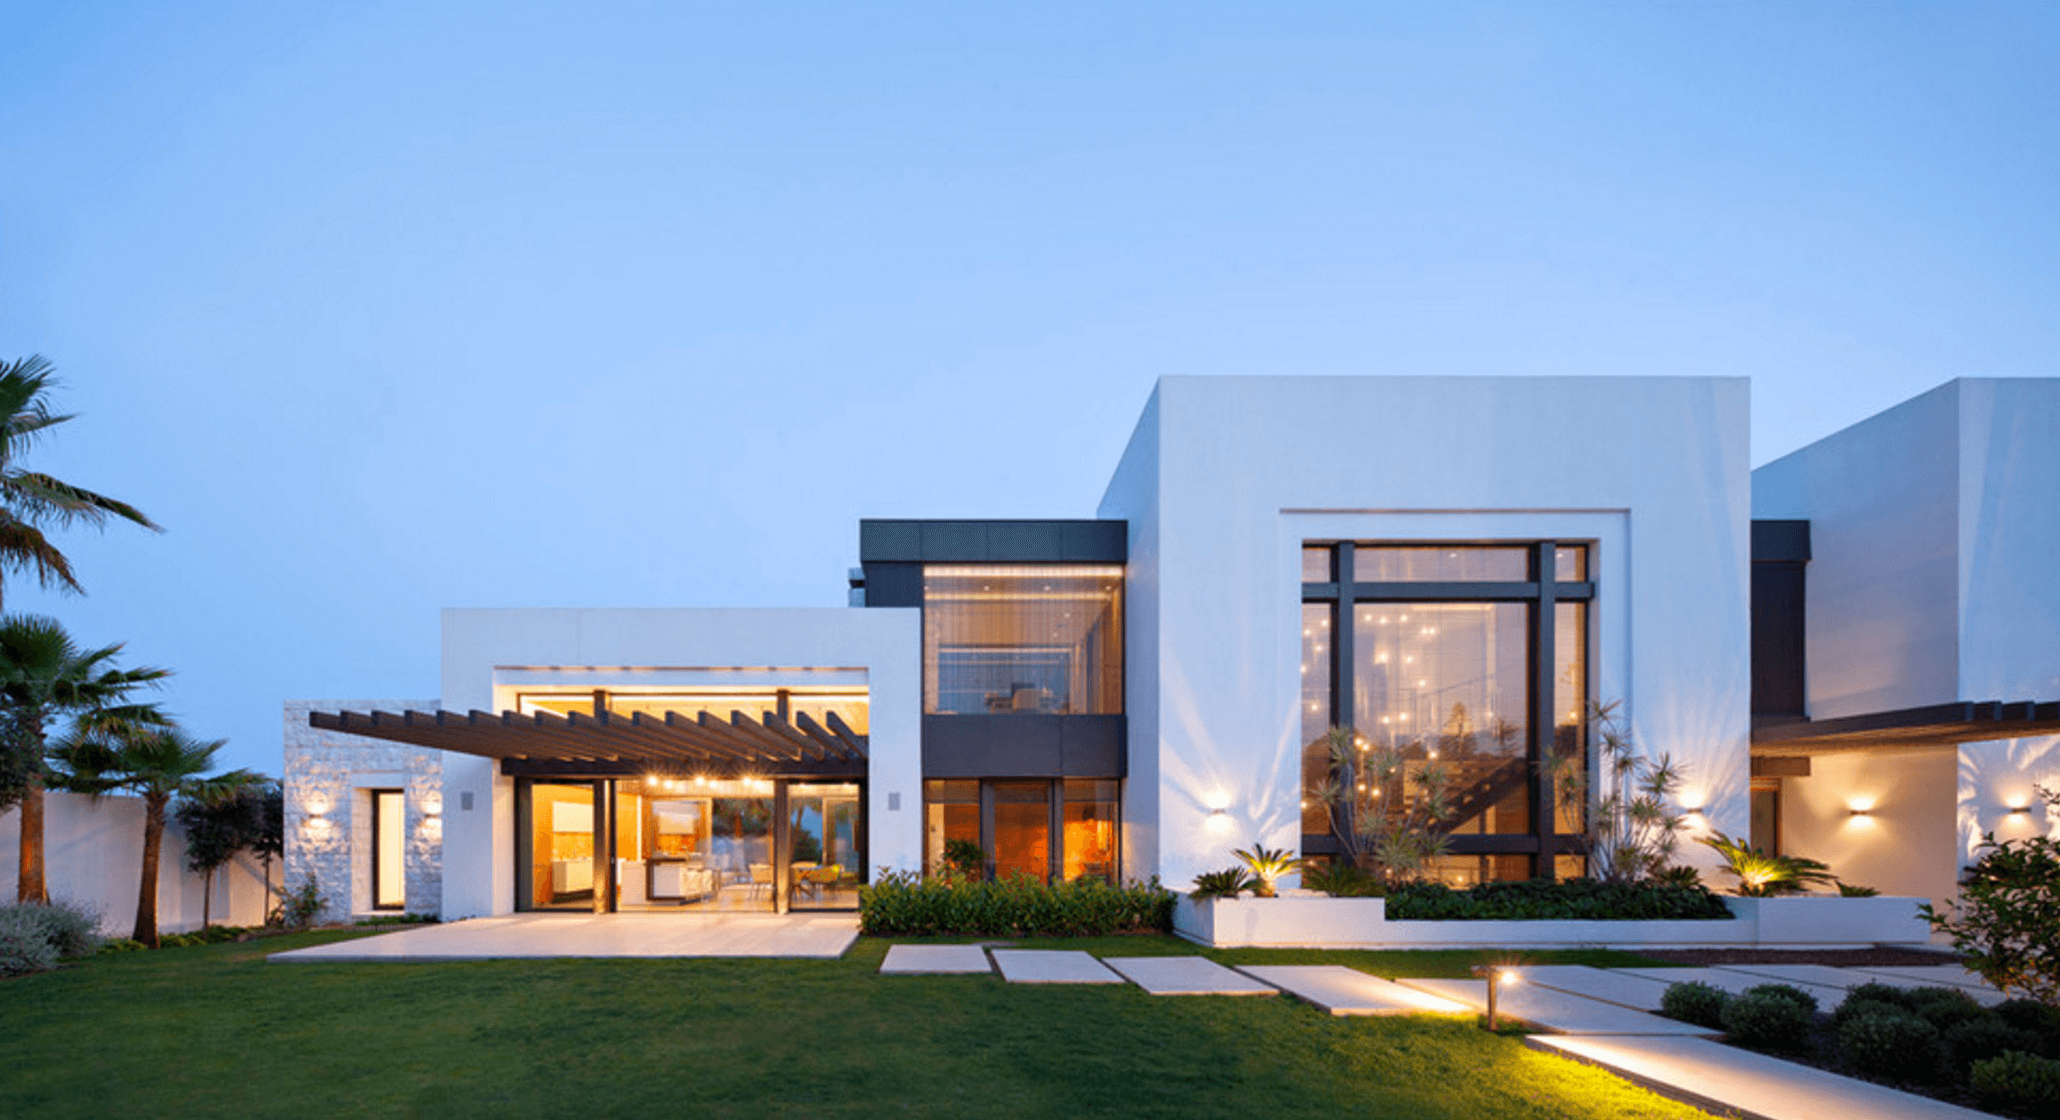 Super strak wit design huis